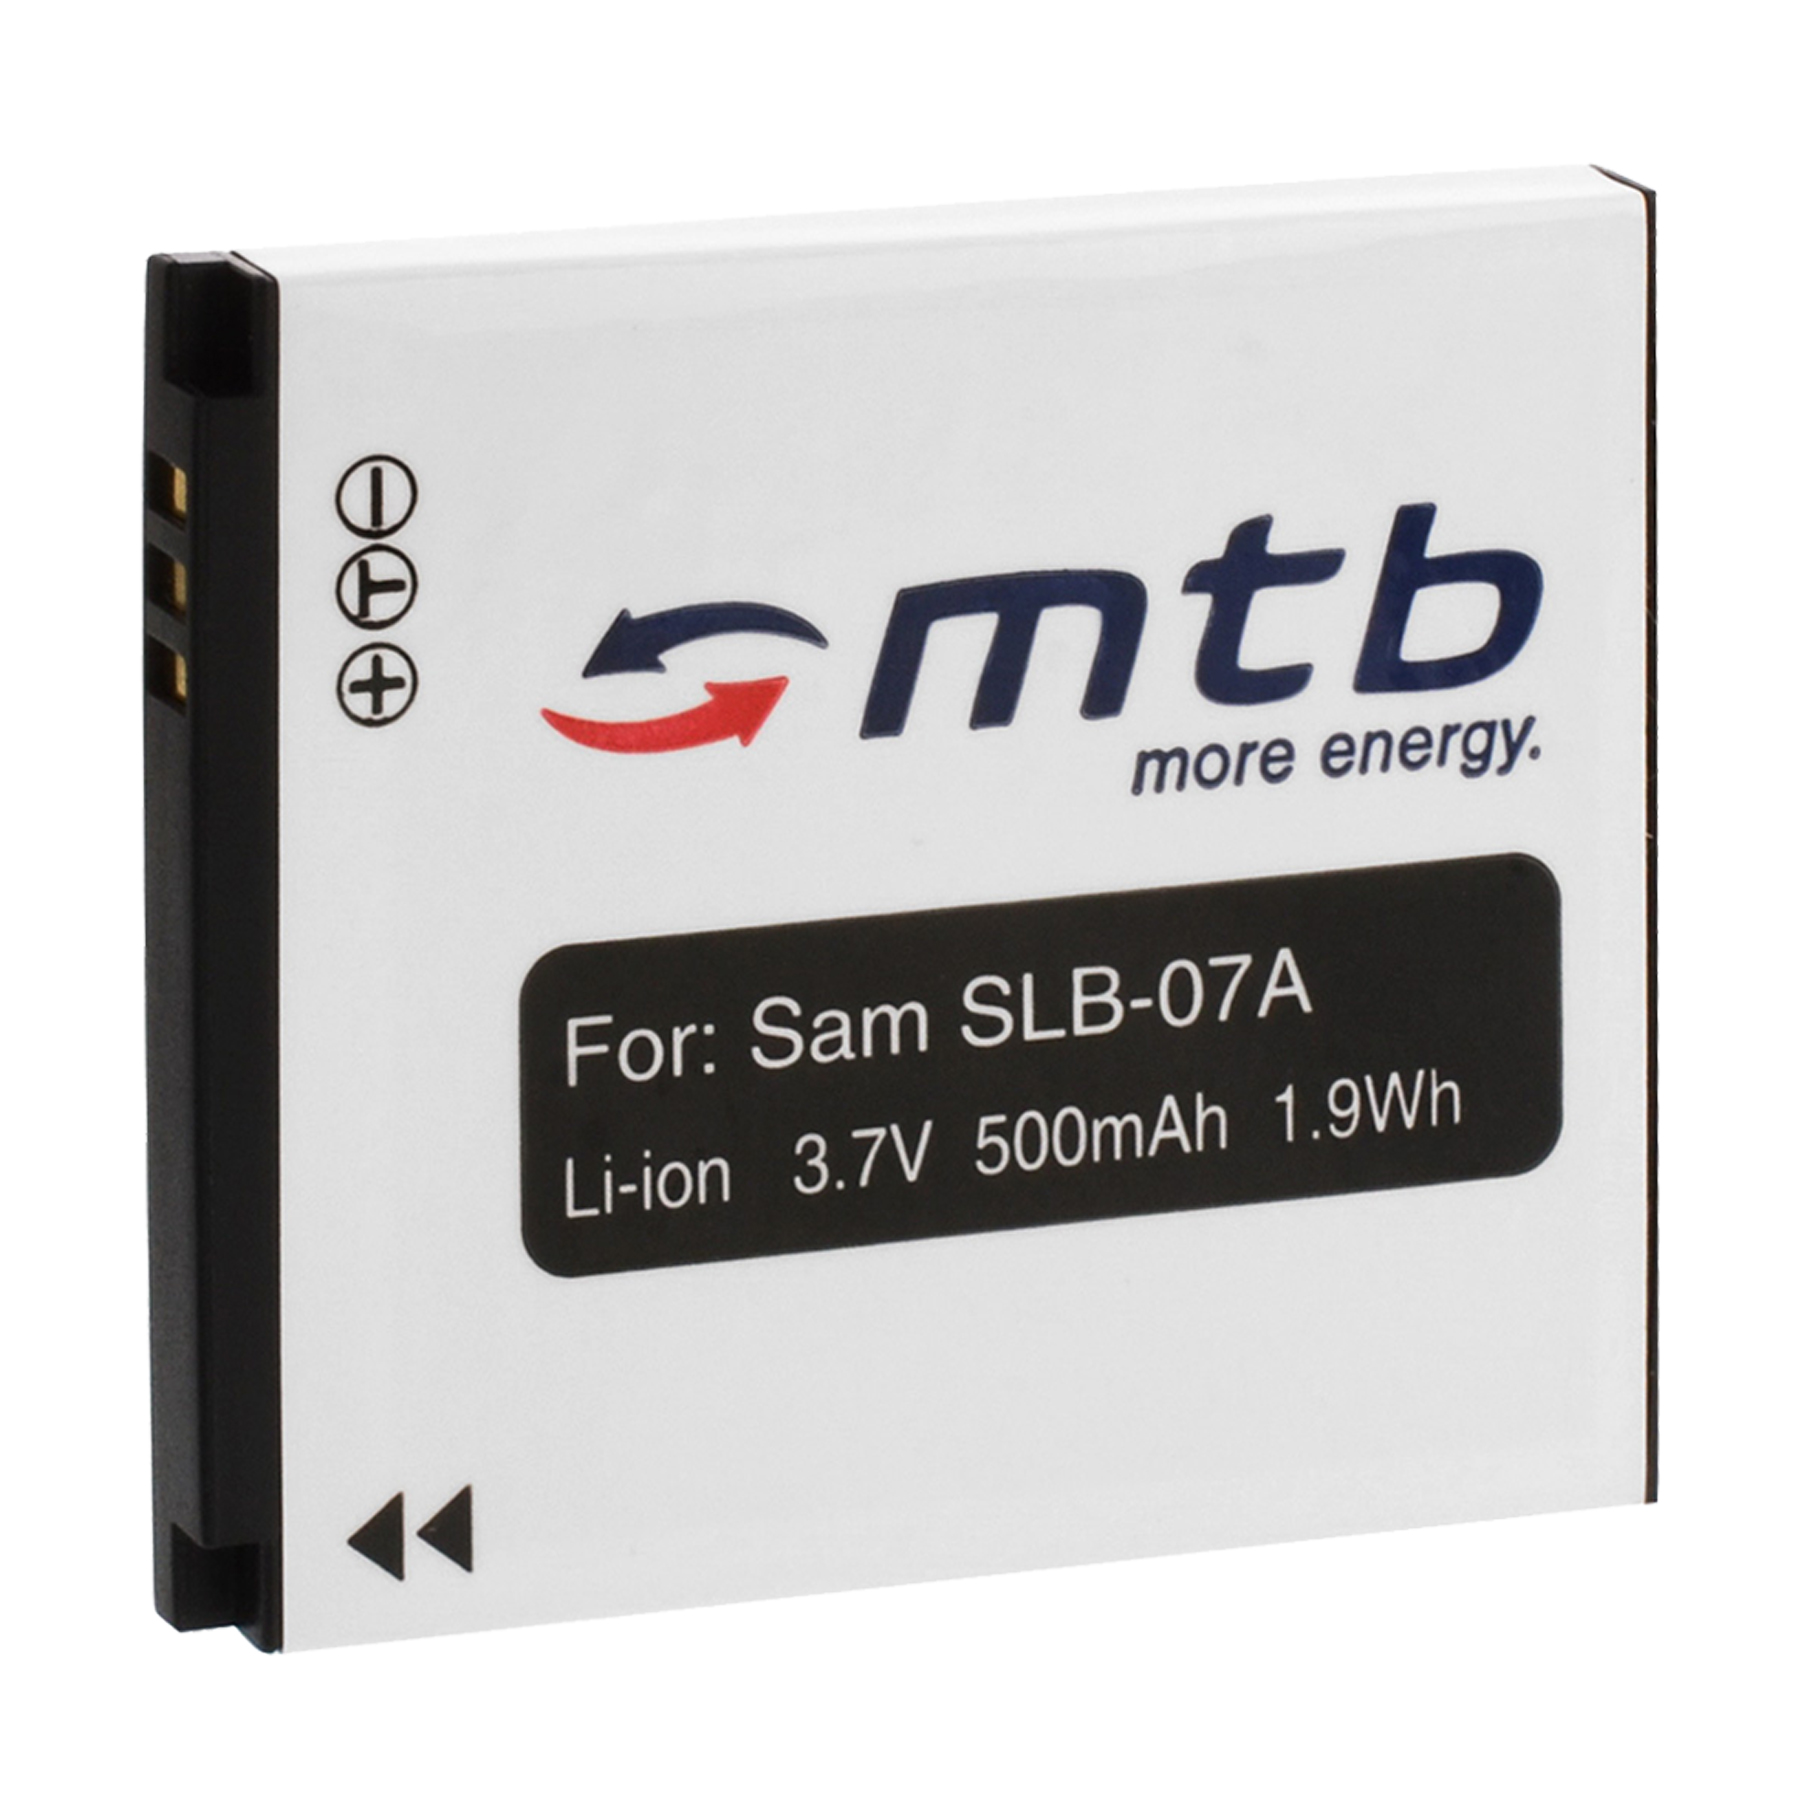 MTB MORE ENERGY BAT-279 mAh Li-Ion, Akku, 500 SLB-07A